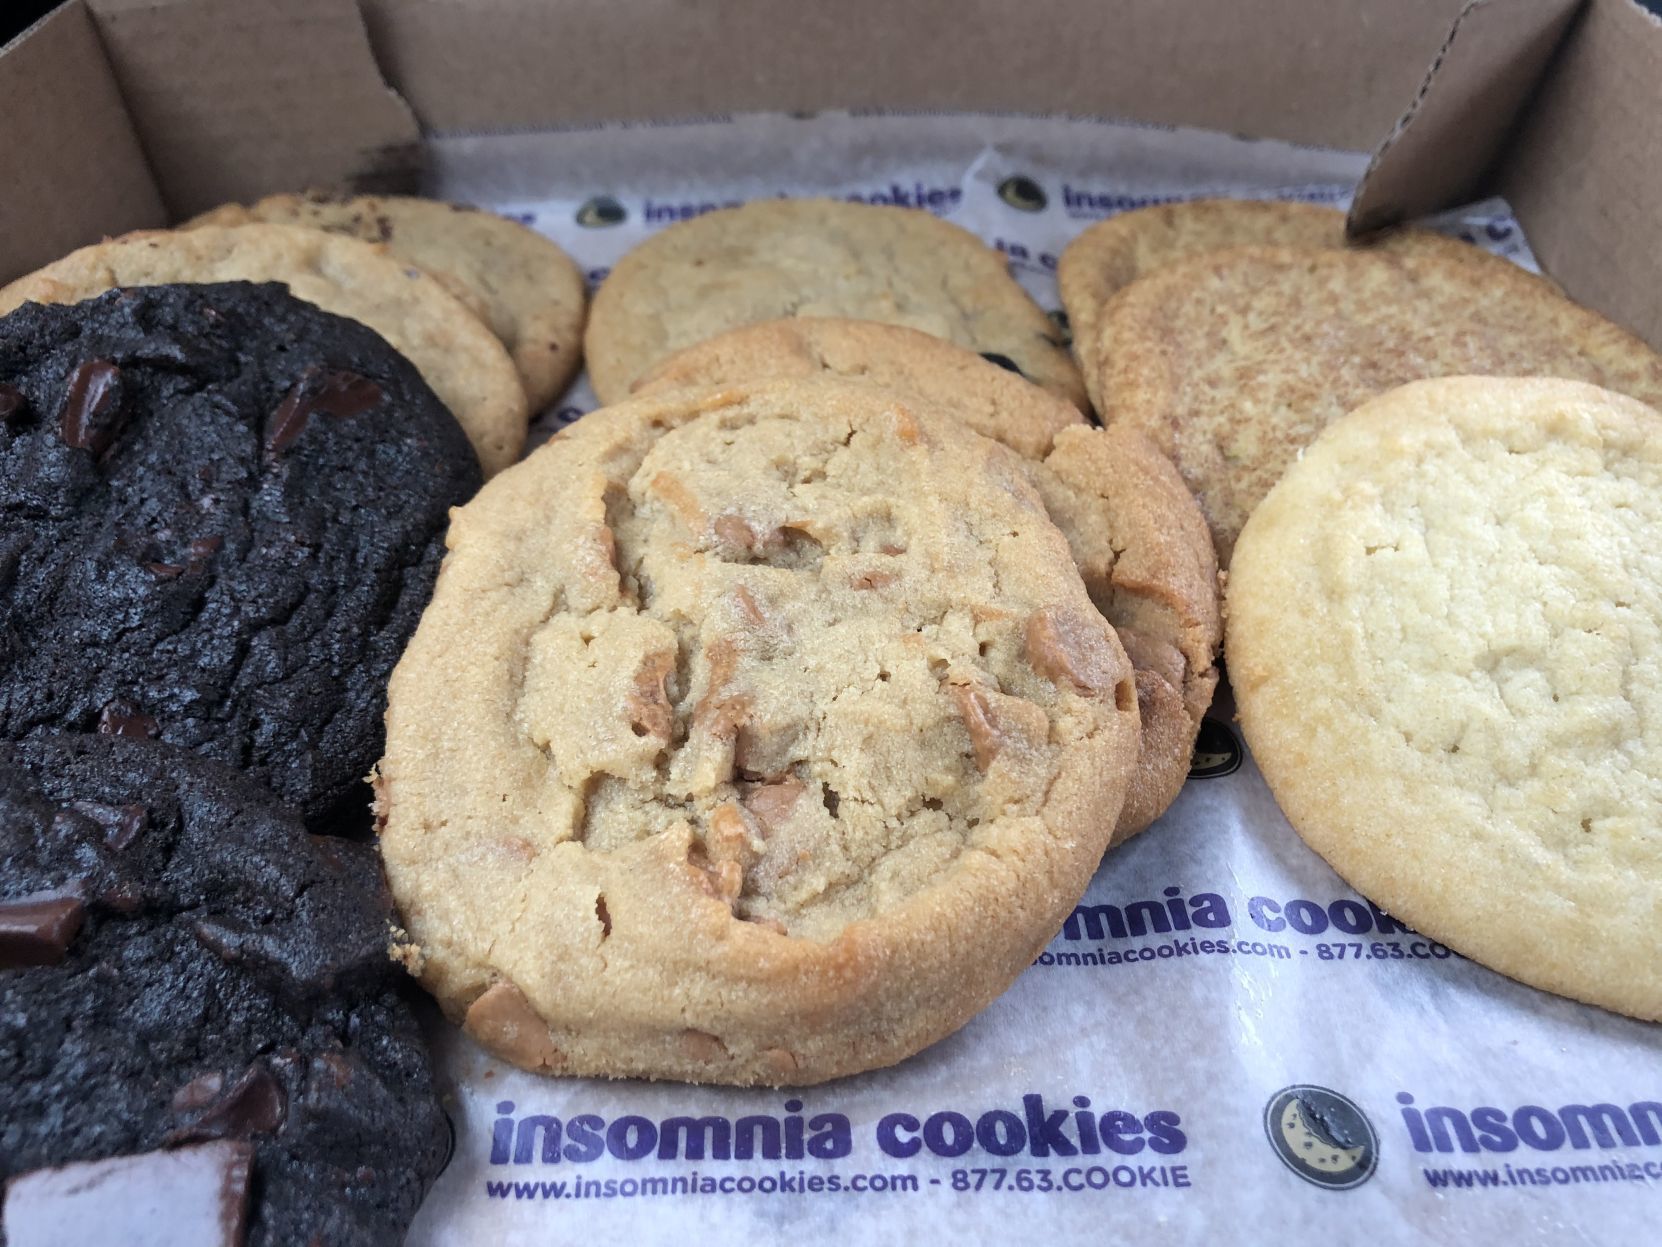 insomnia cookies delivery philadelphia